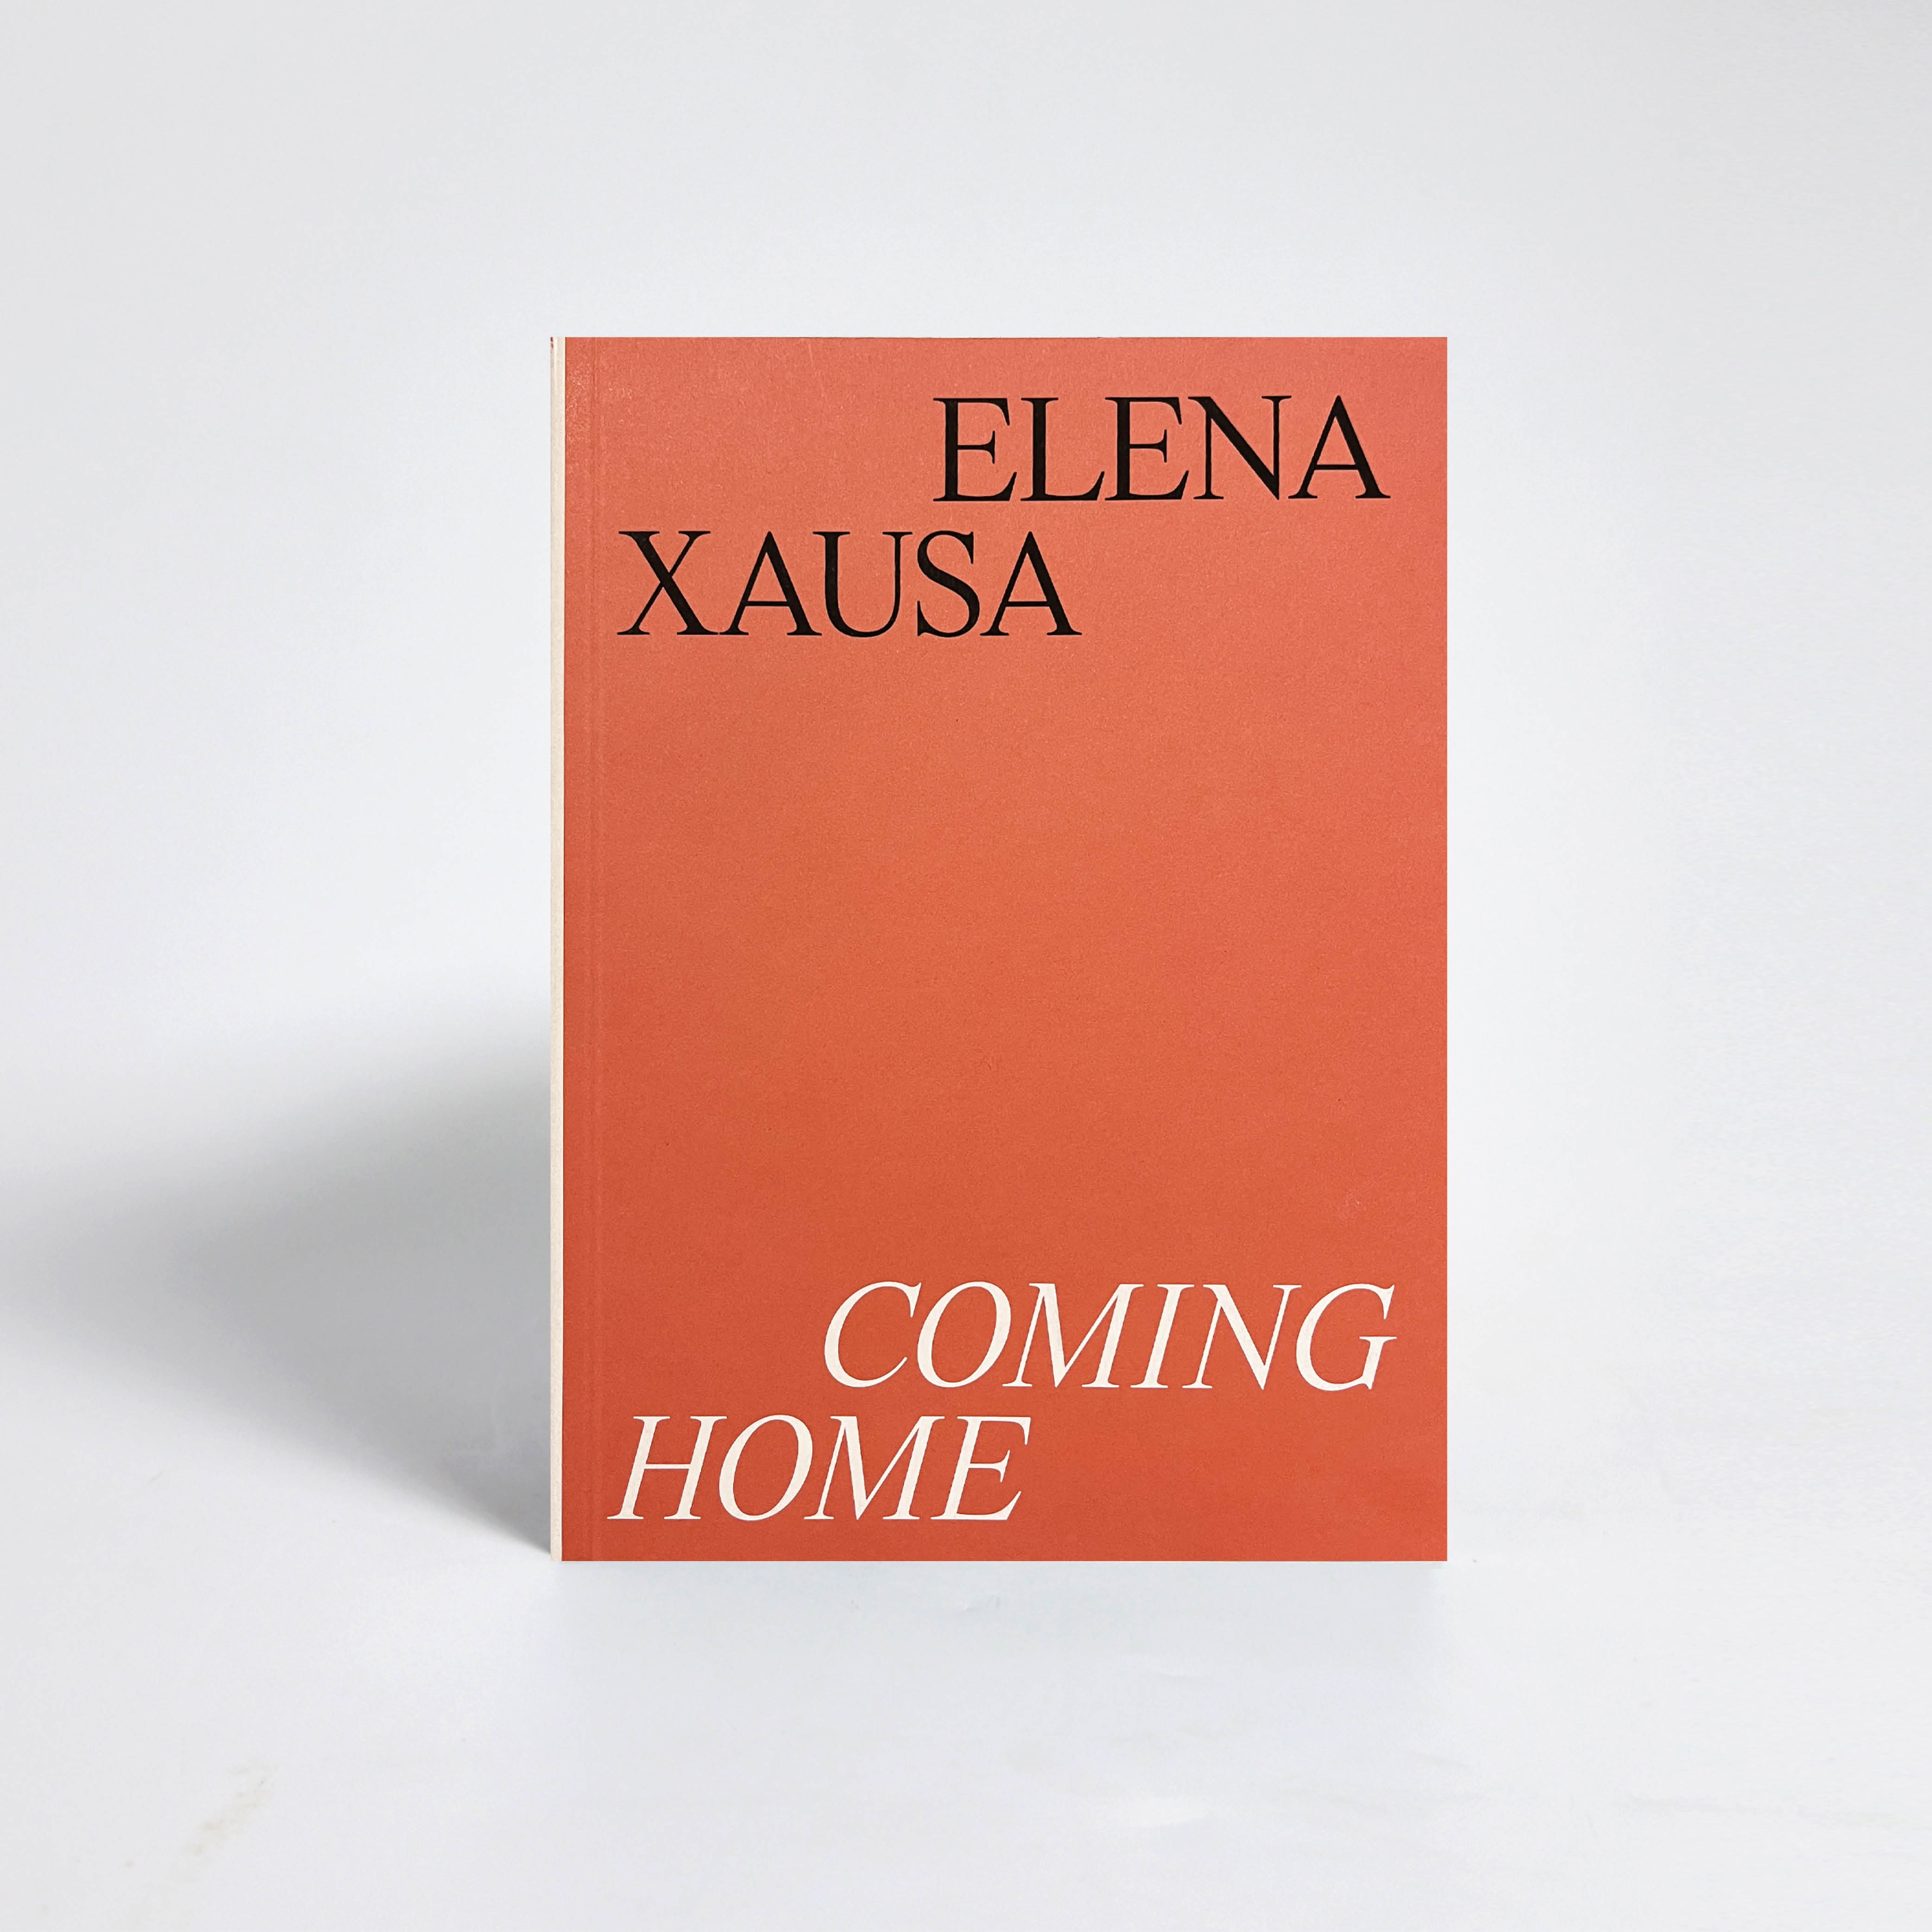 Elena Xausa. Coming home